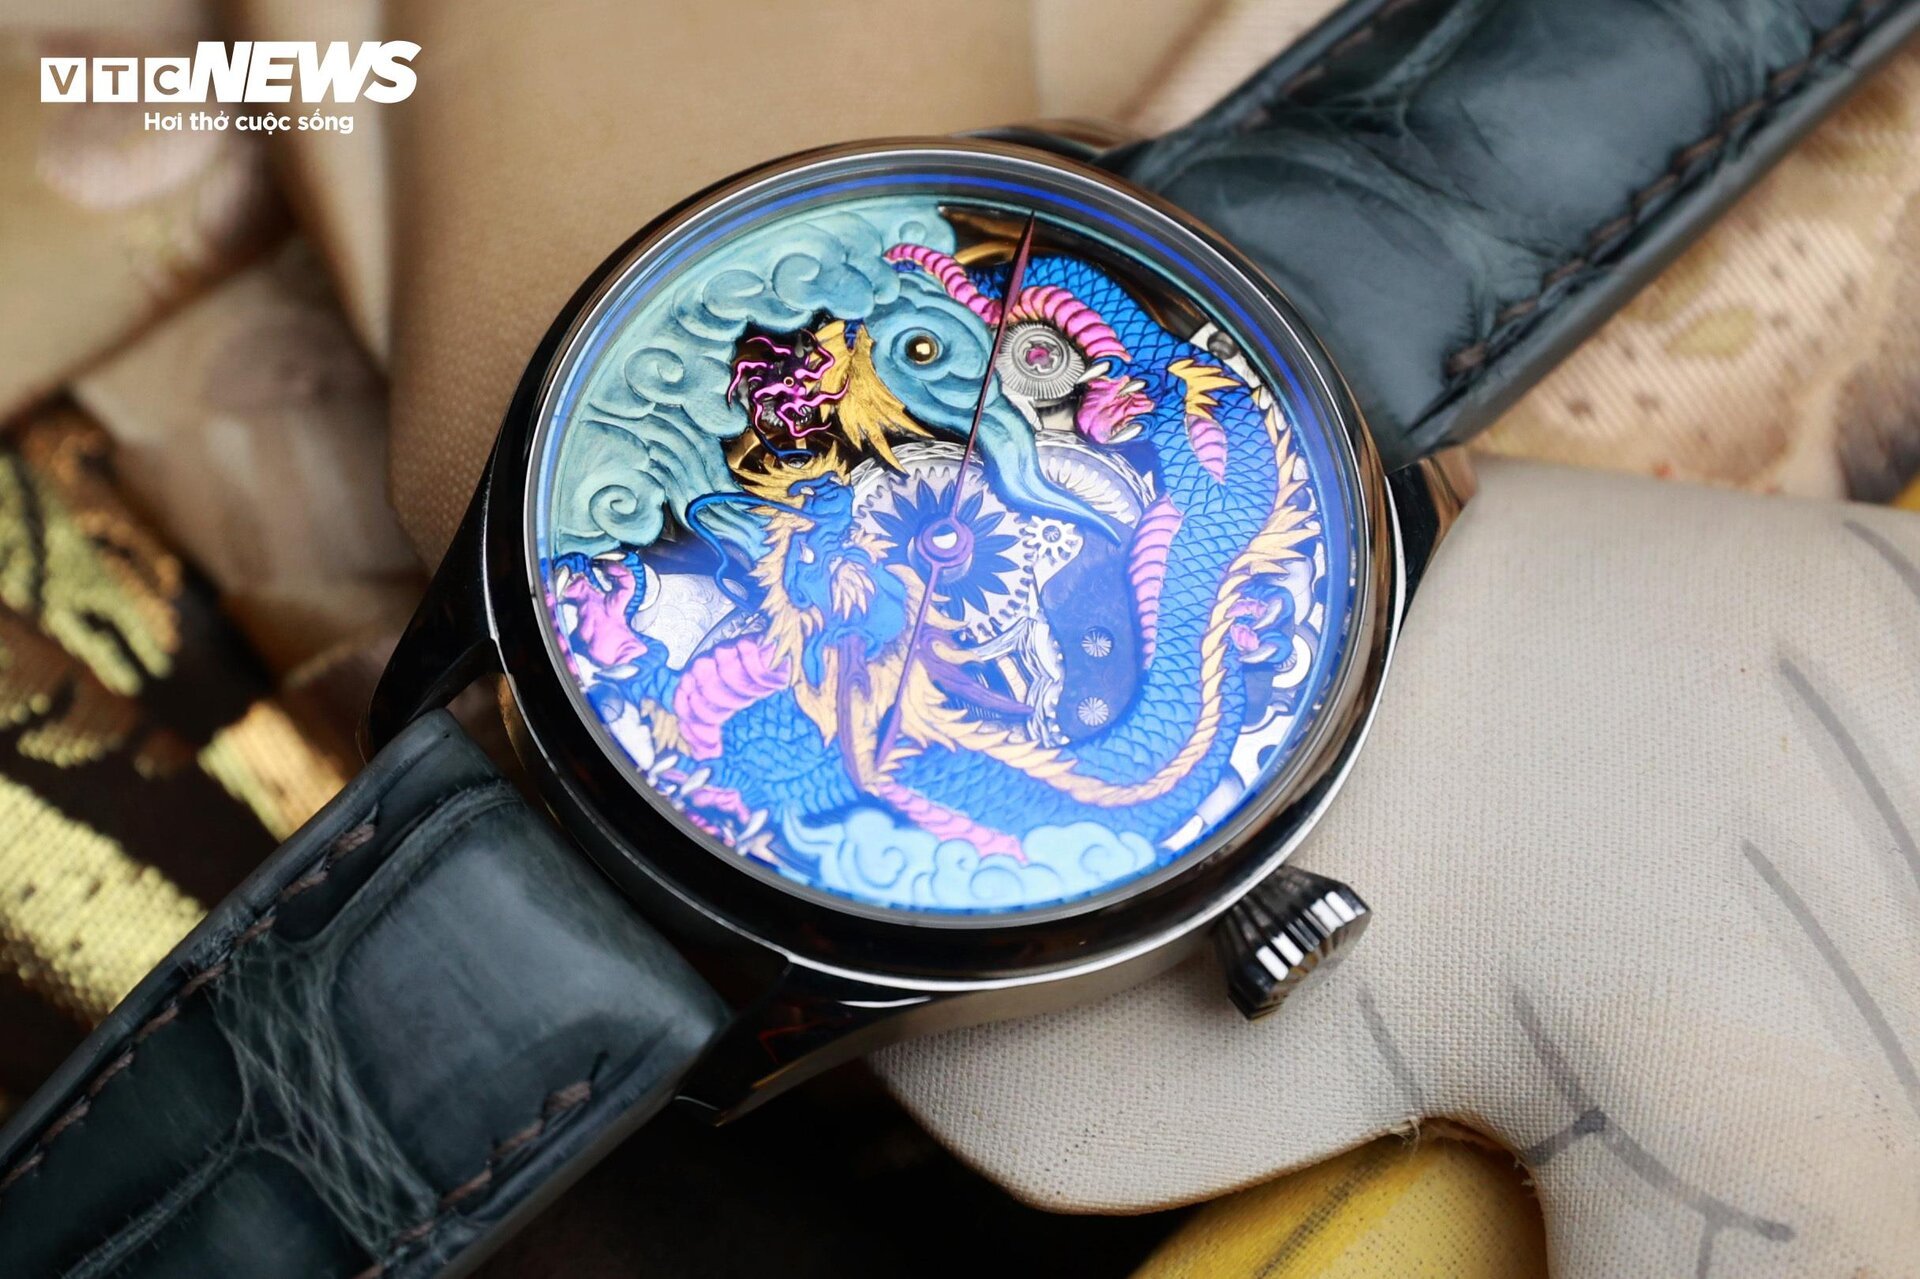 Chiếc đồng hồ bằng titan được thợ thủ công Việt định giá 300 triệu đồng - 1